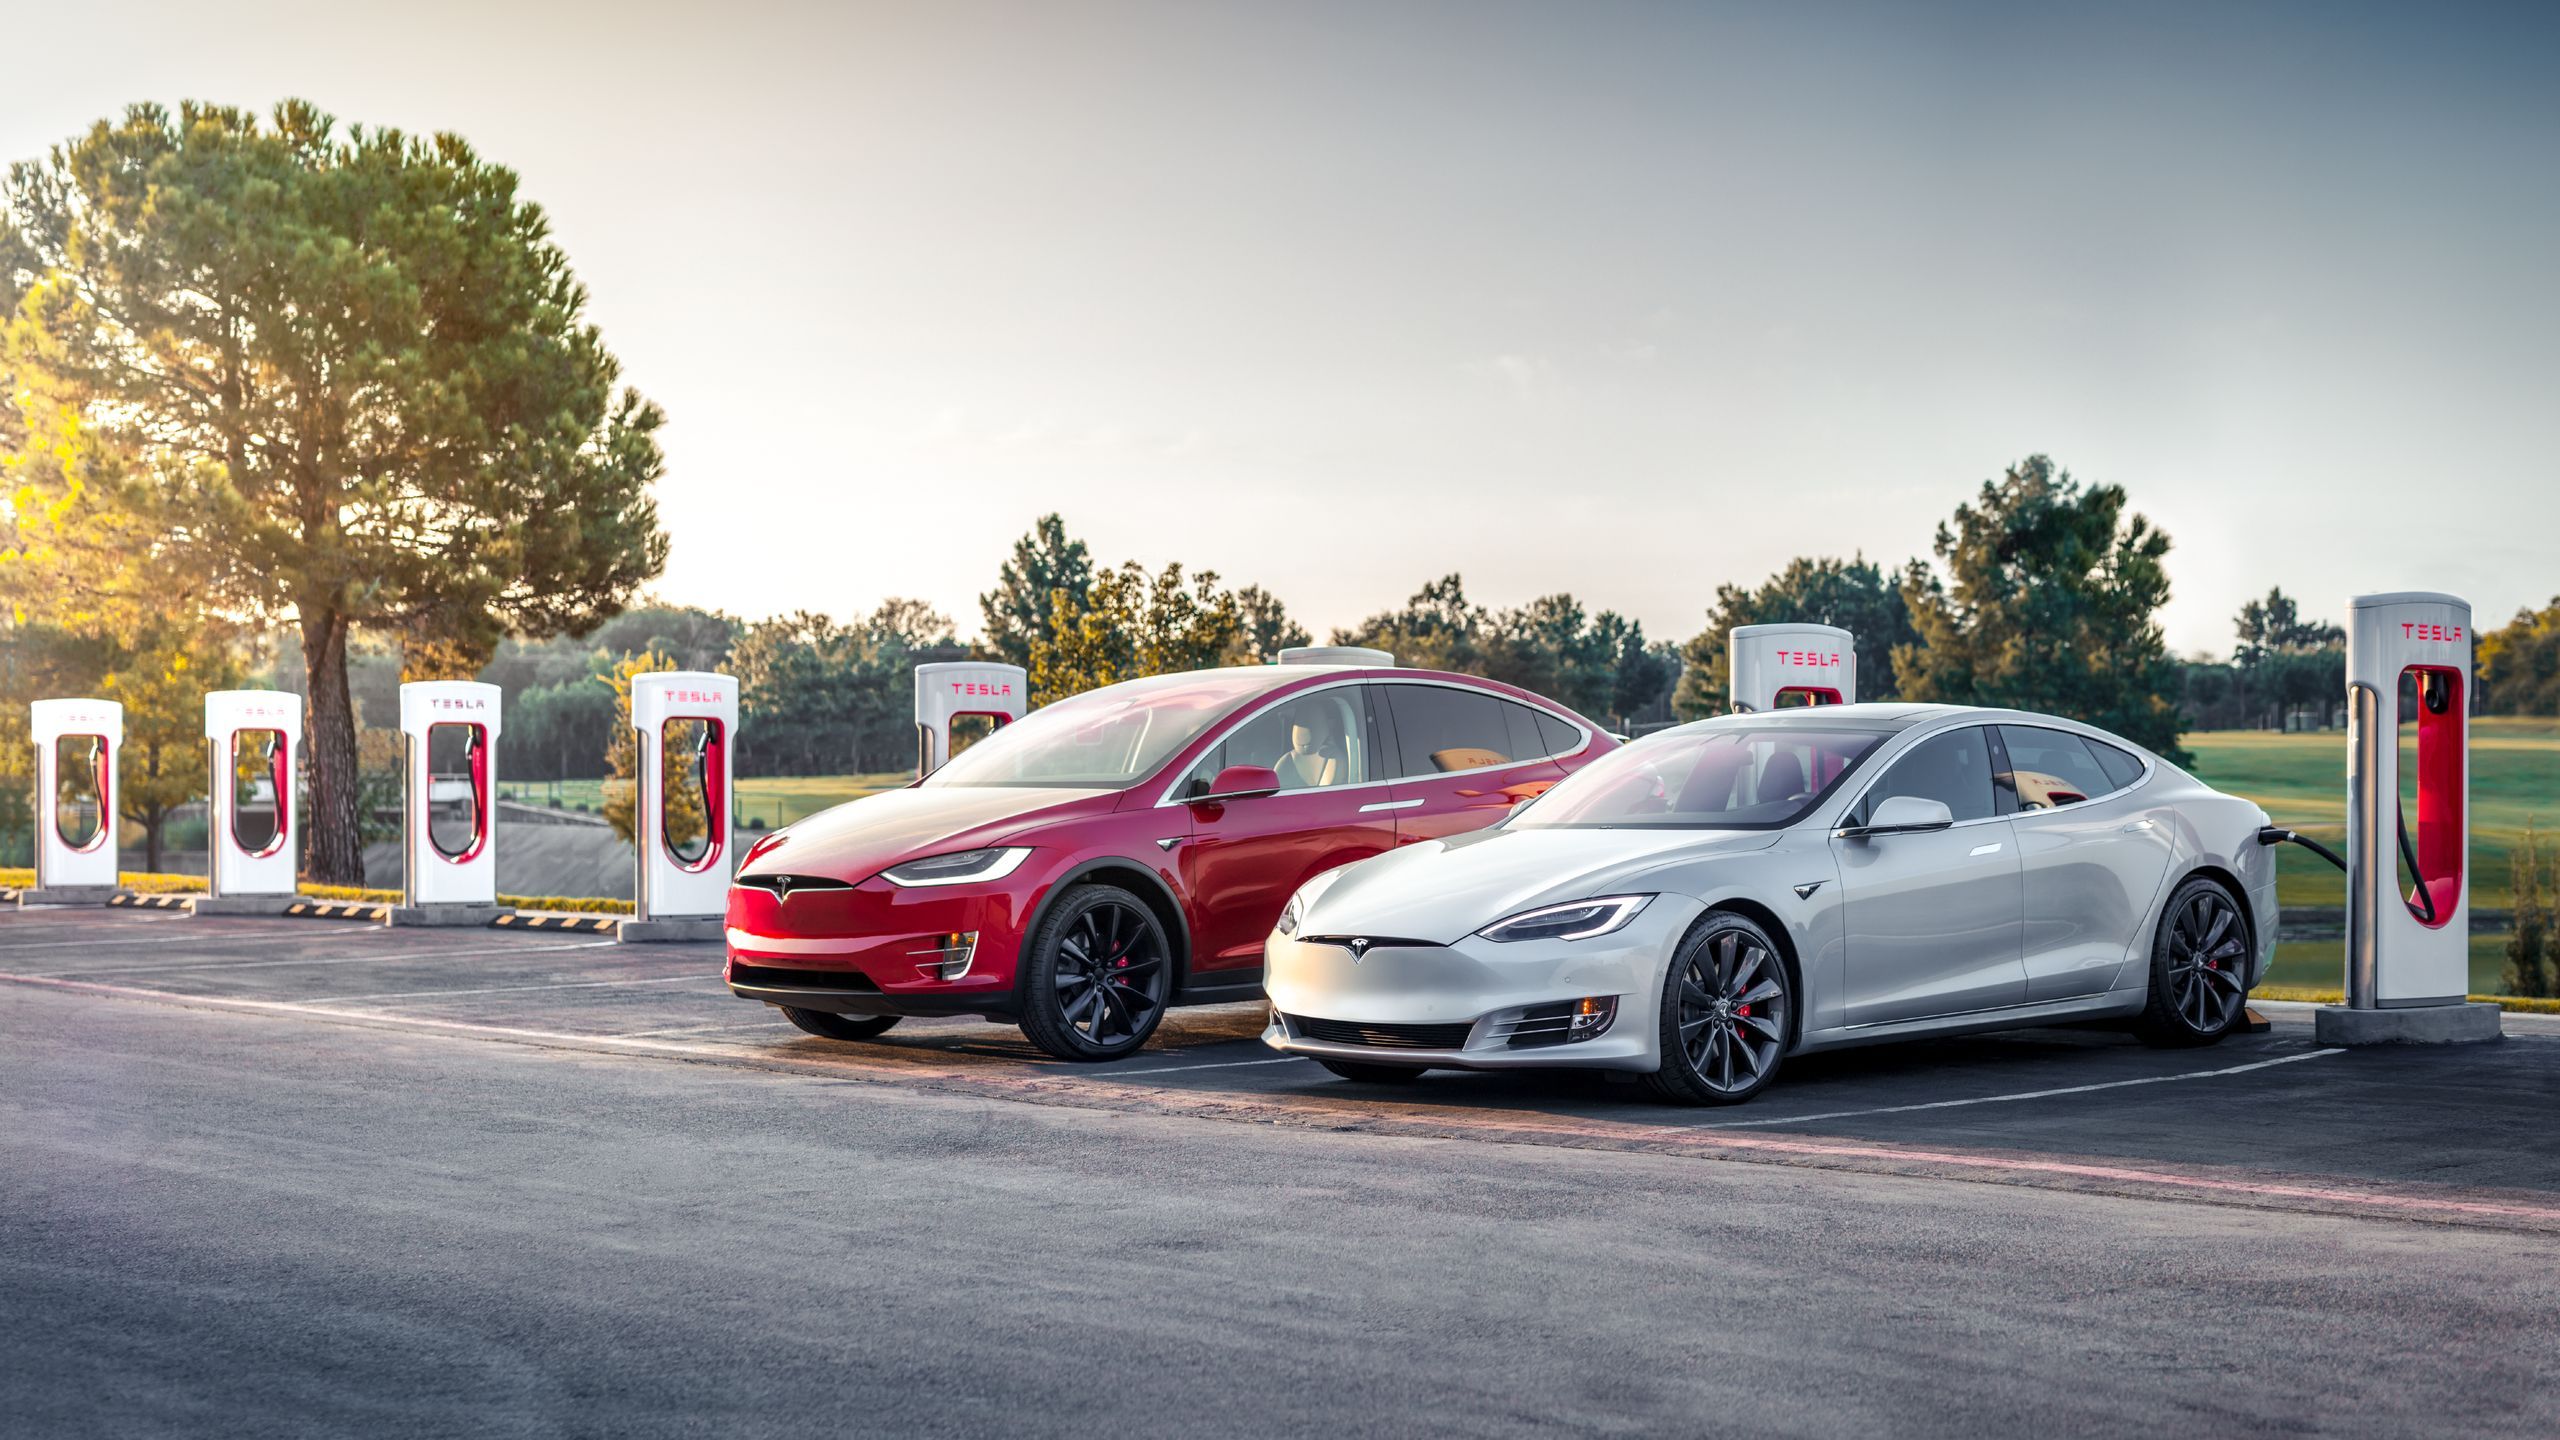 Η Tesla πρωτοπορεί: Έχει στα «σκαριά» μπαταρία με διάρκεια ζωής 1,6 εκατομμύρια χιλιόμετρα